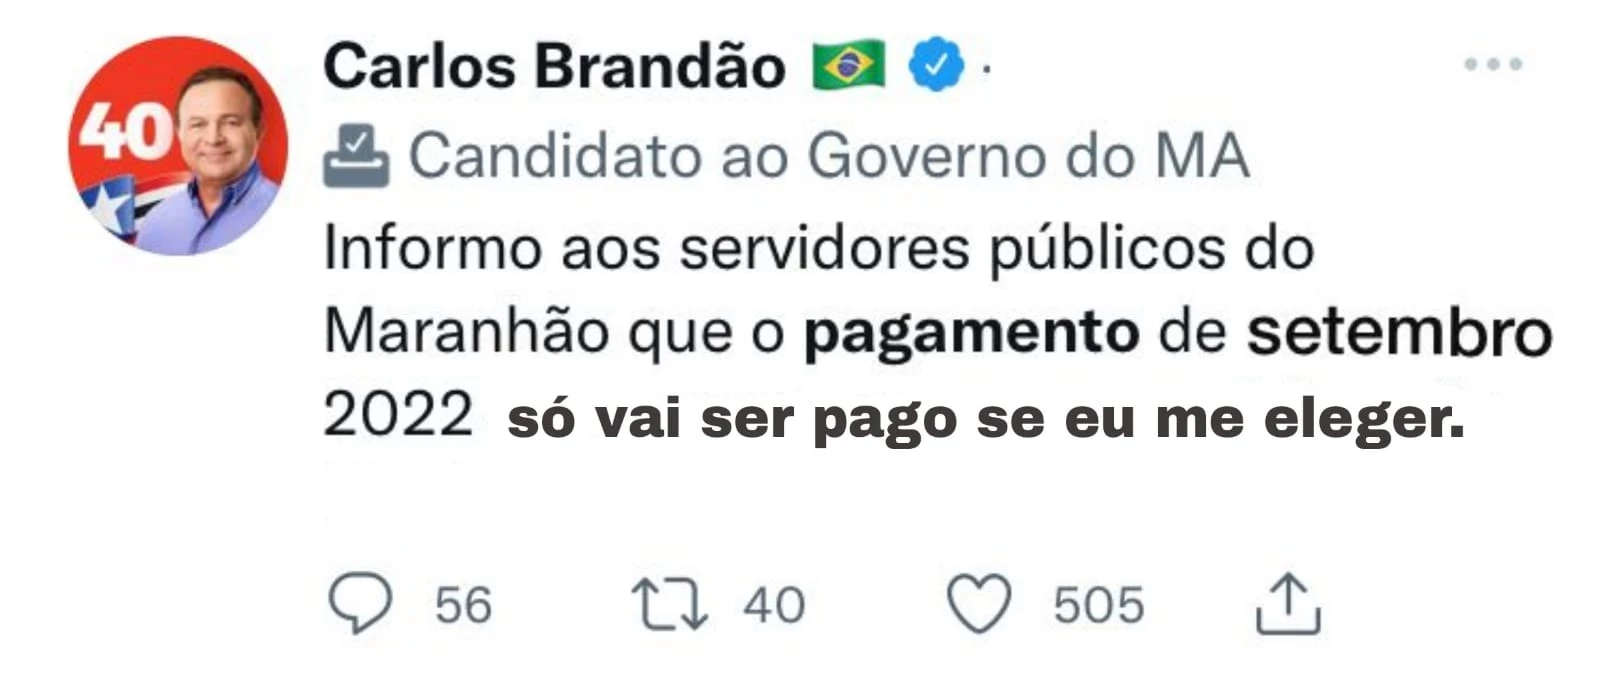 É FAKE! Brandão não anunciou antecipação de salário - Gilberto Léda